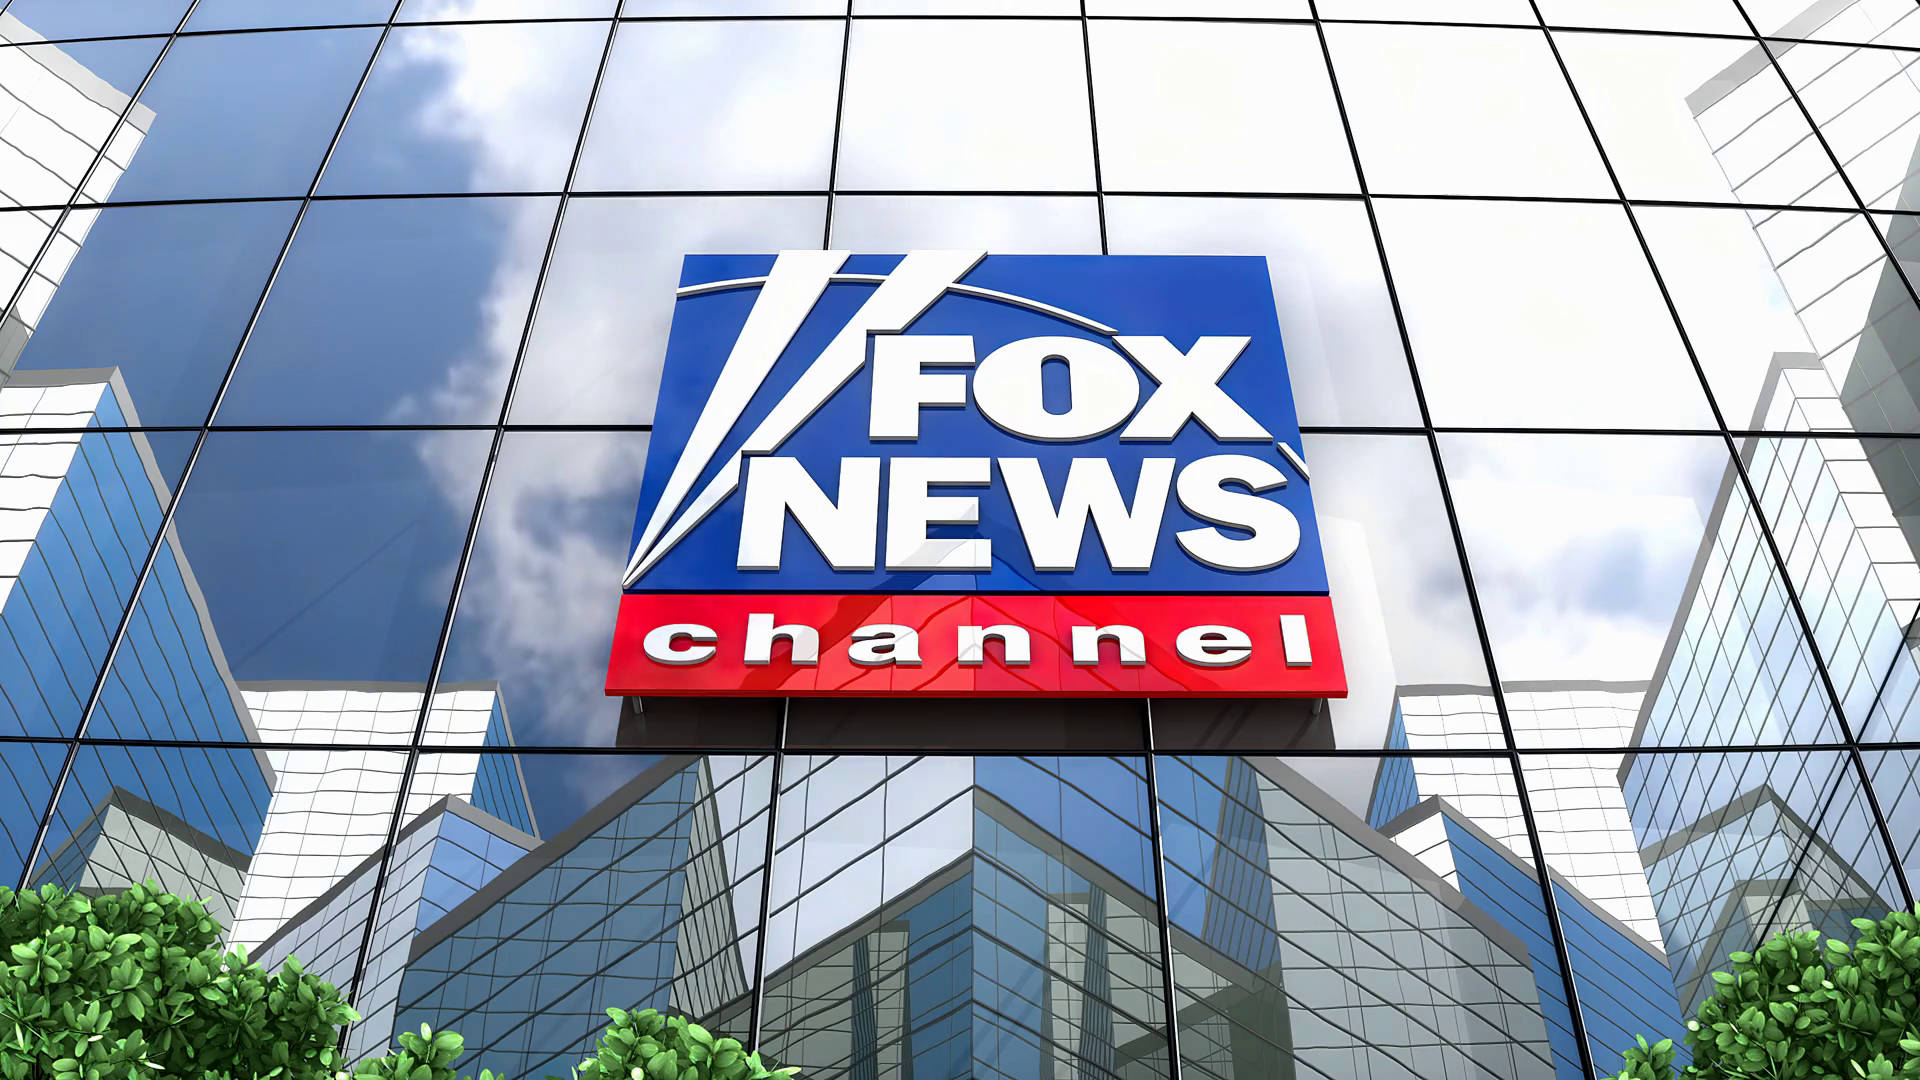 Plano De Fundo Da Fox News